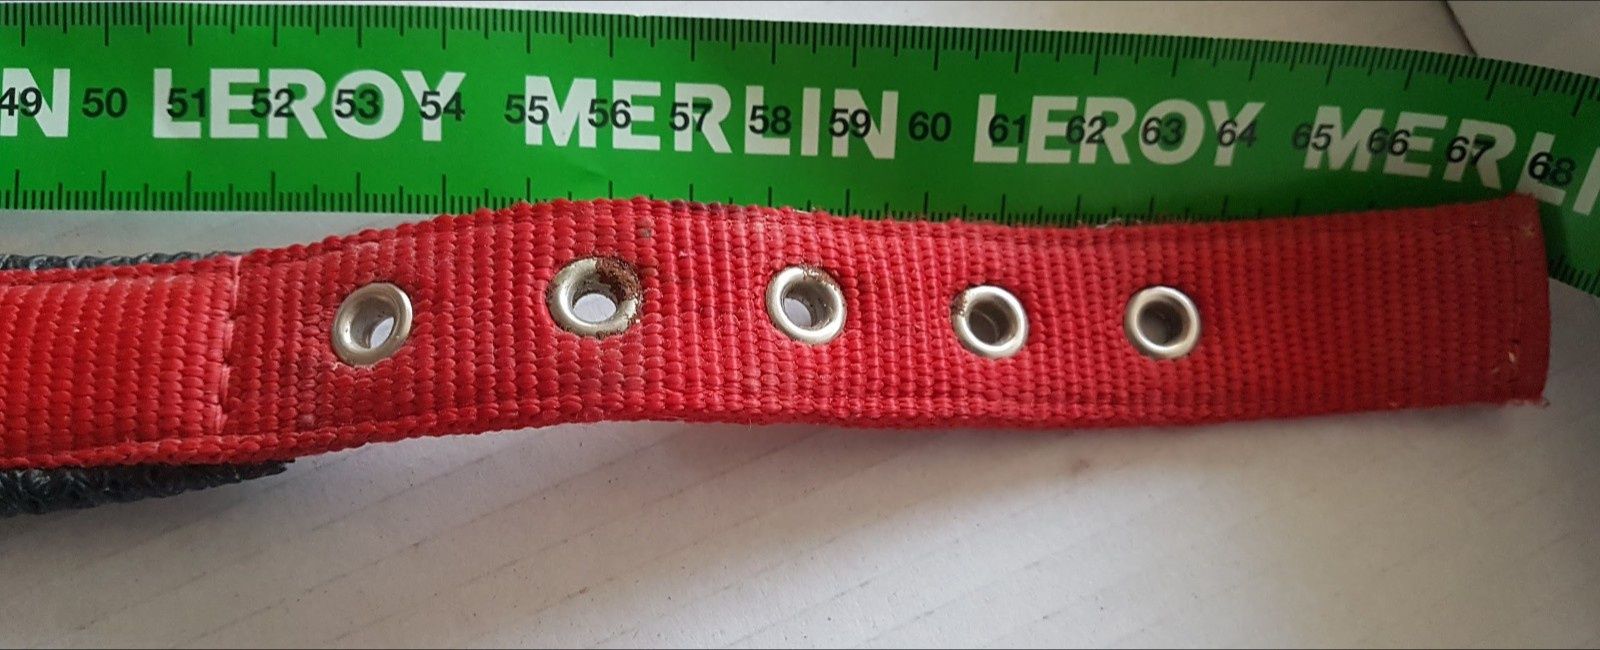 Coleira em nylon vermelha acolchoada (53a63cm perímetro)